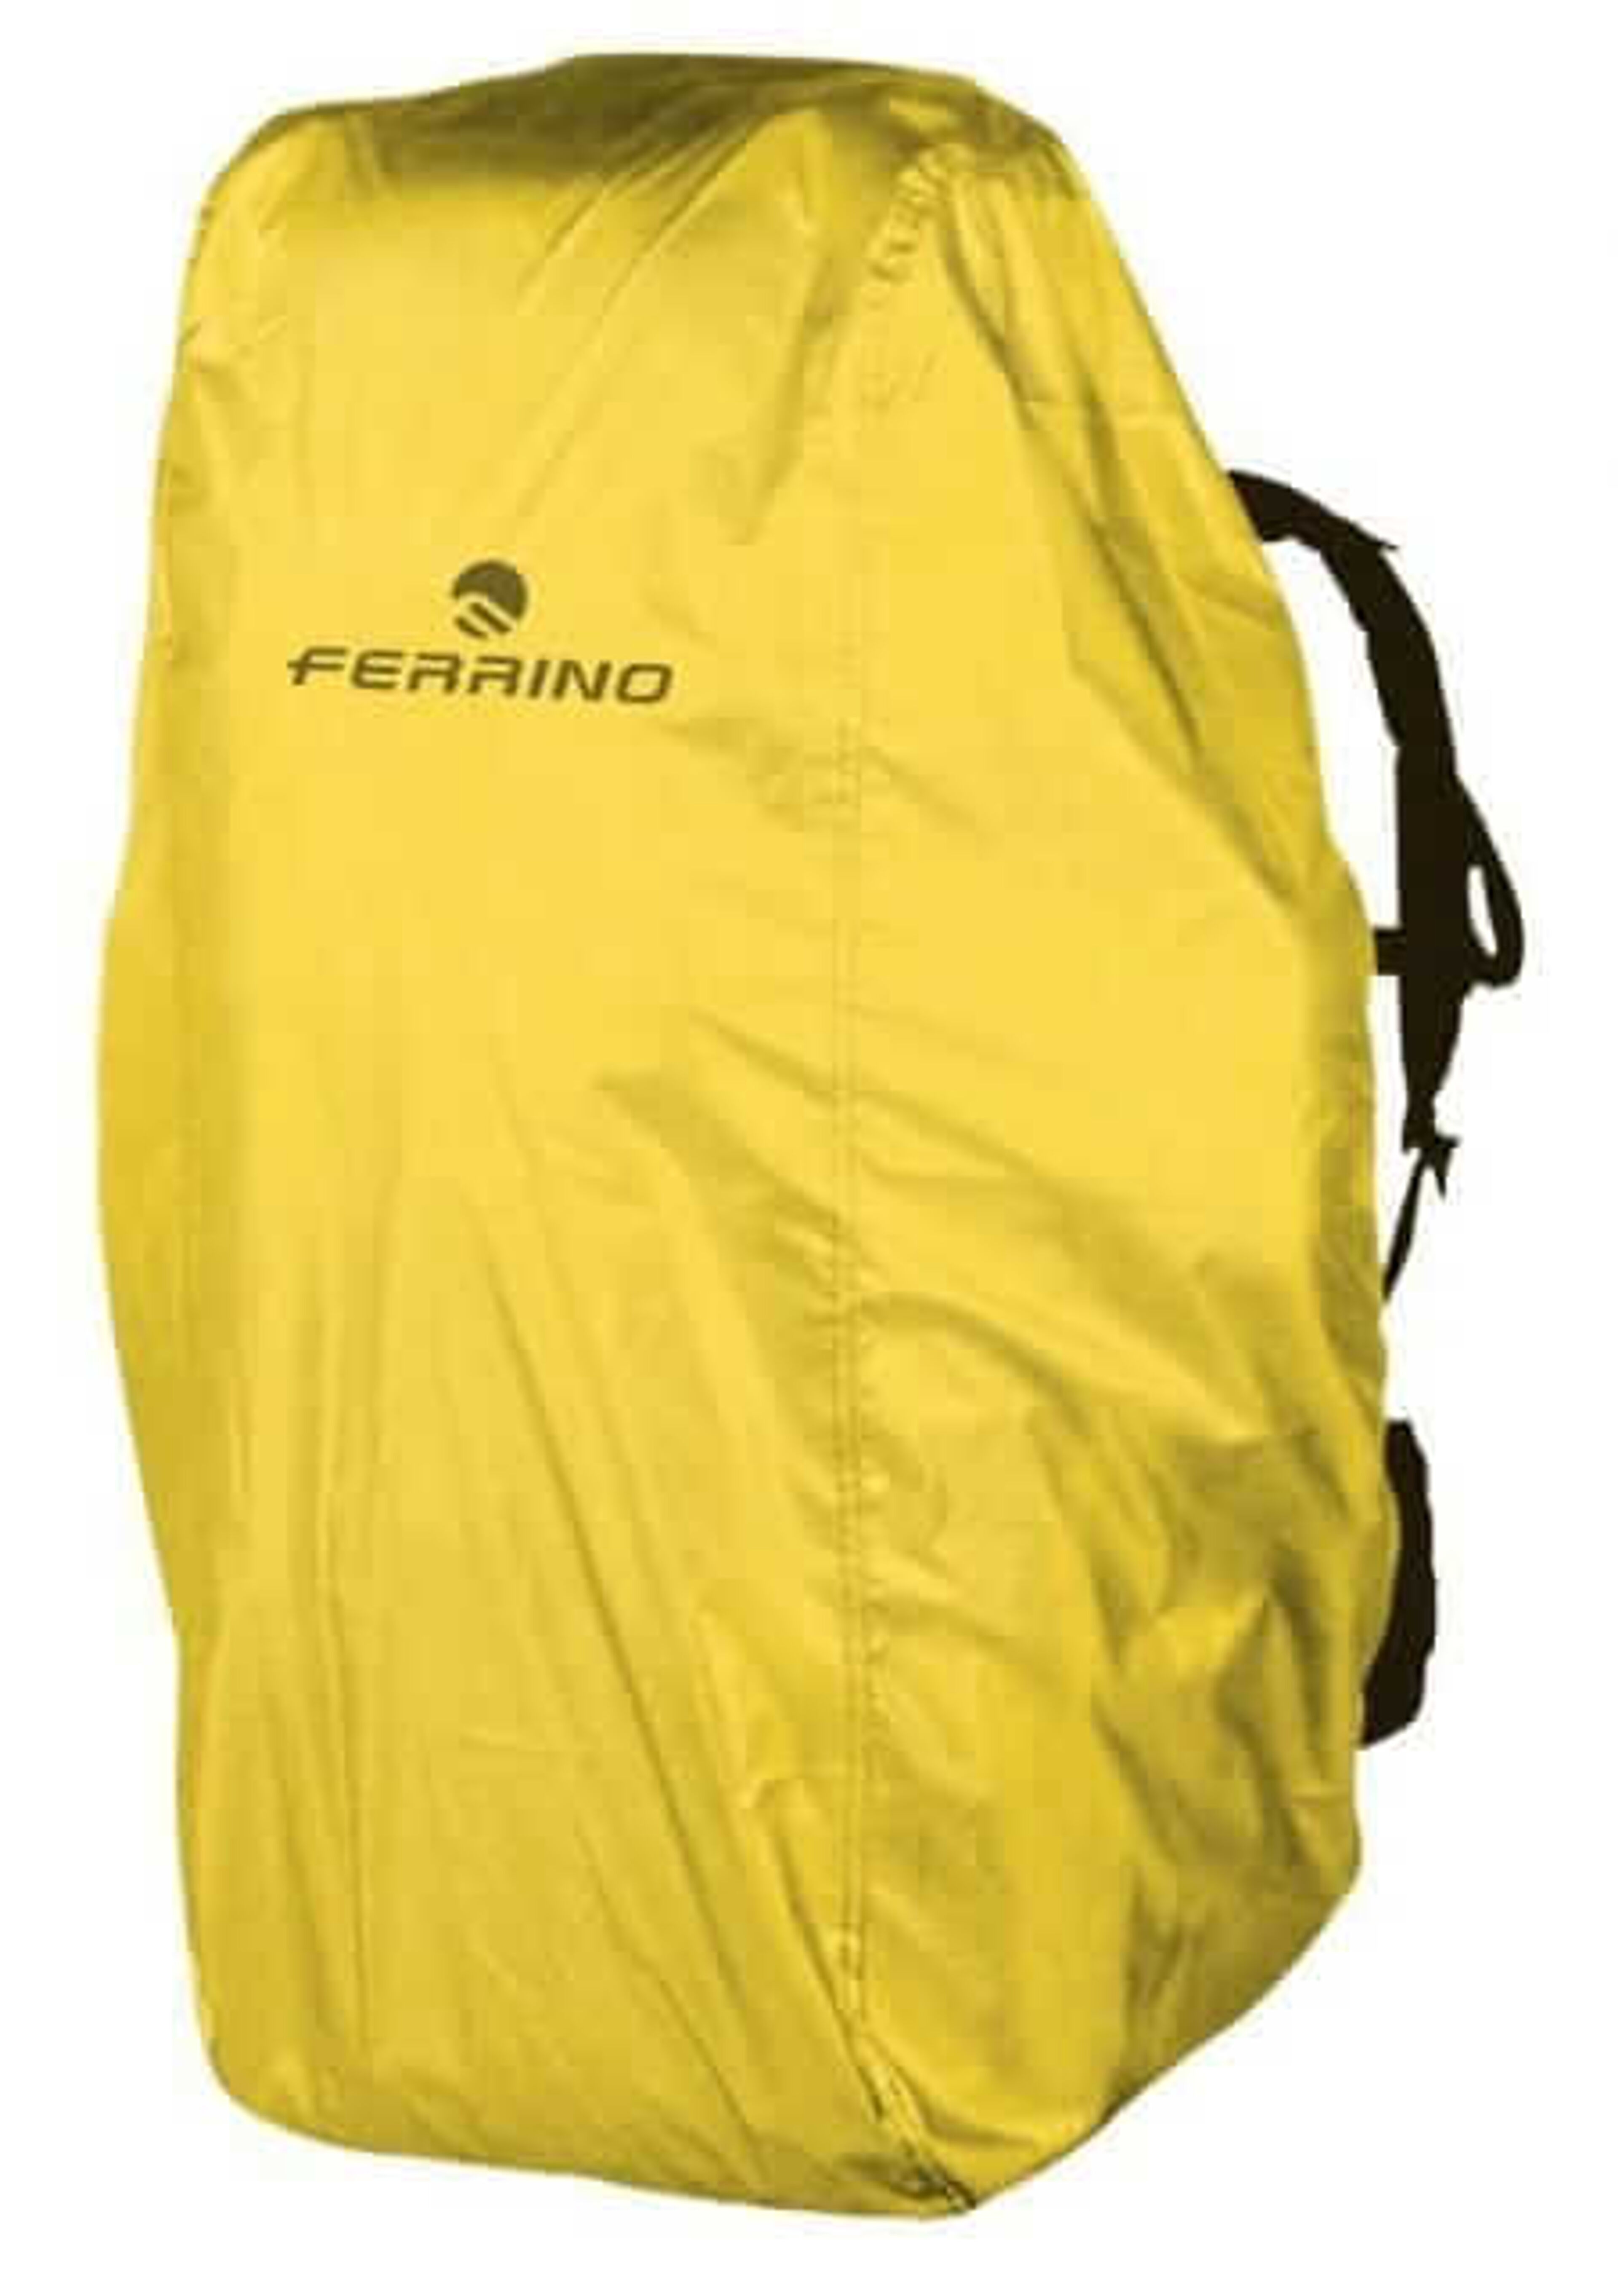 Ferrino Cover 0 Backpack Cover